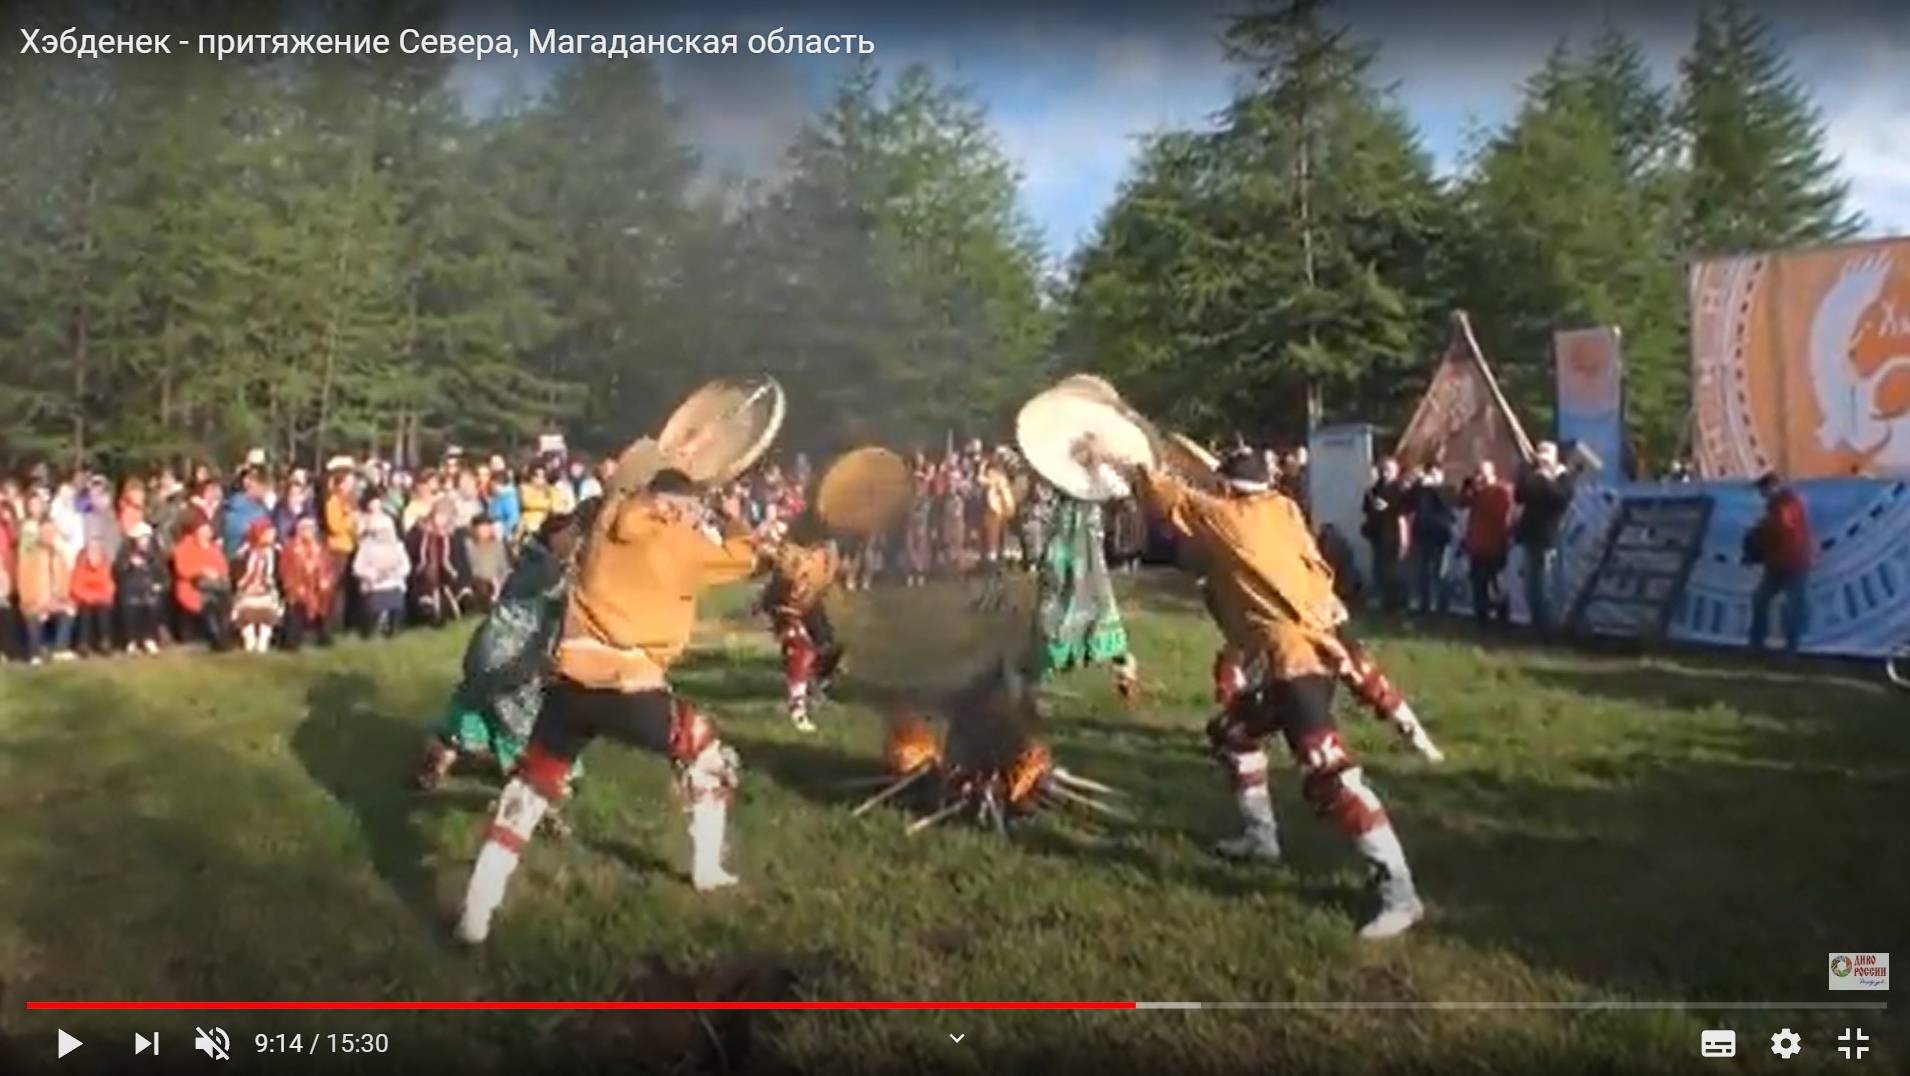 Цитата из видео «Хэбденек — притяжение Севера, Магаданская область»